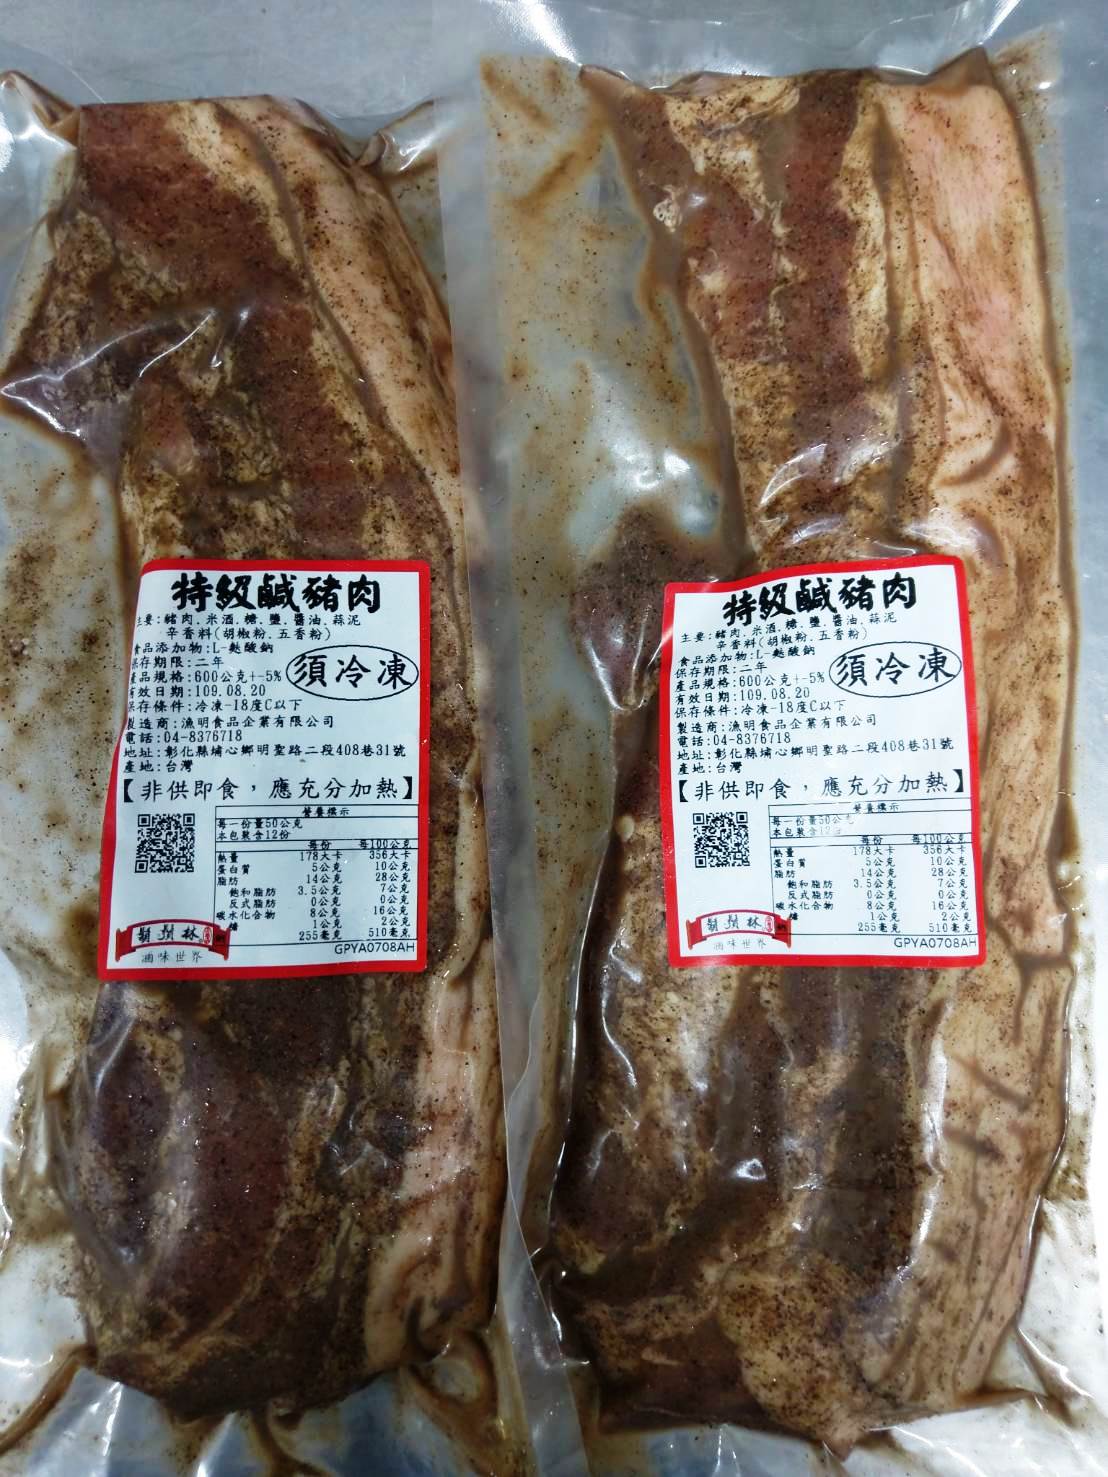 特級鹹豬肉(正港台灣豬)600g$250